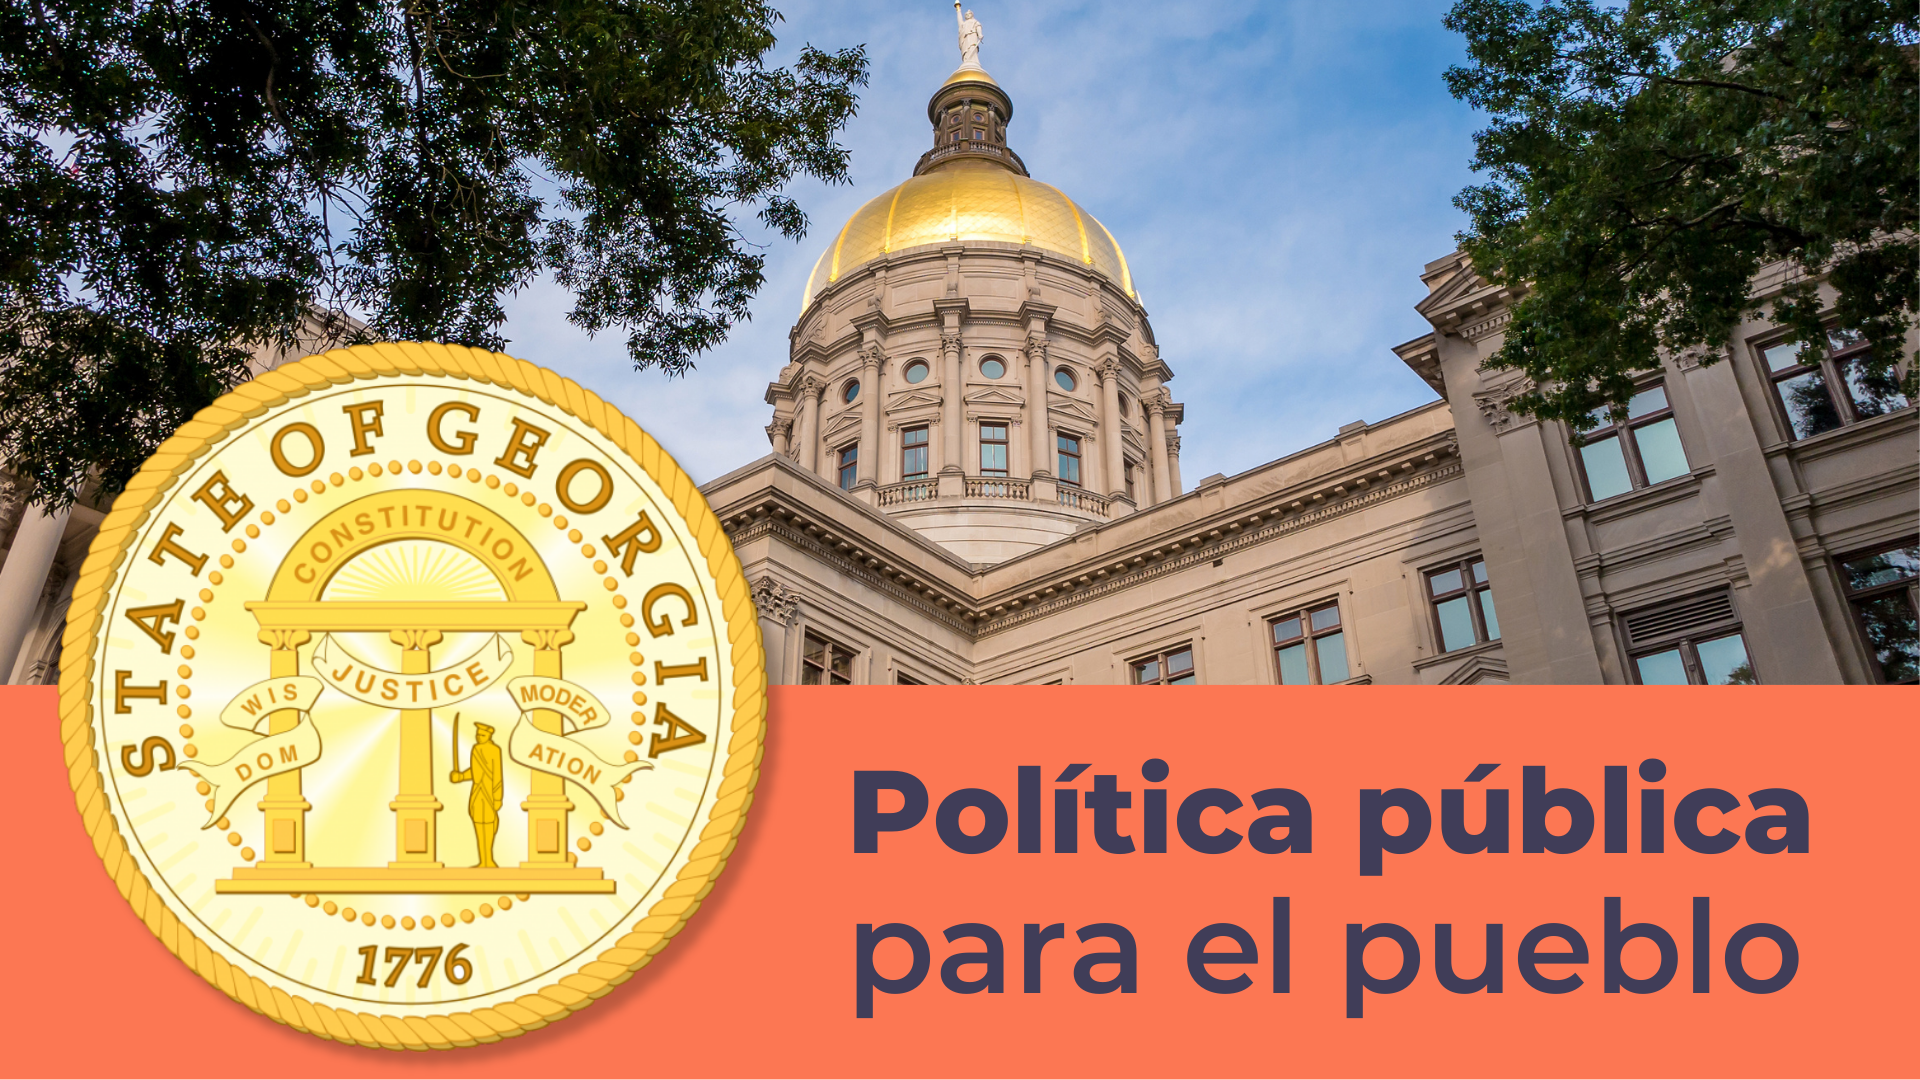 Imagen del Georgia Gold Dome con una pancarta naranja y el sello del estado de Georgia en dorado, y texto que dice Política pública para la gente